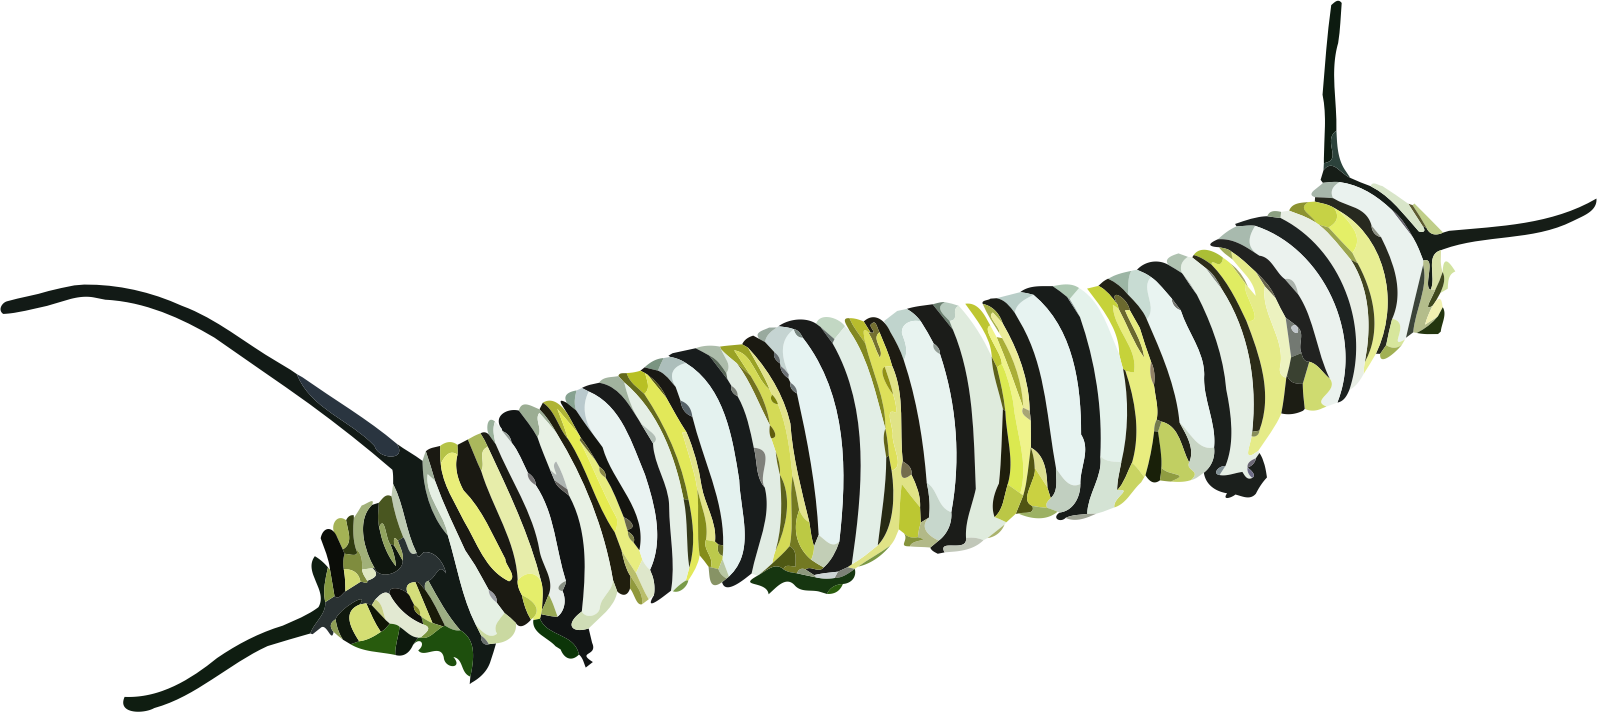 Caterpillar PNG Transparent Images | PNG All